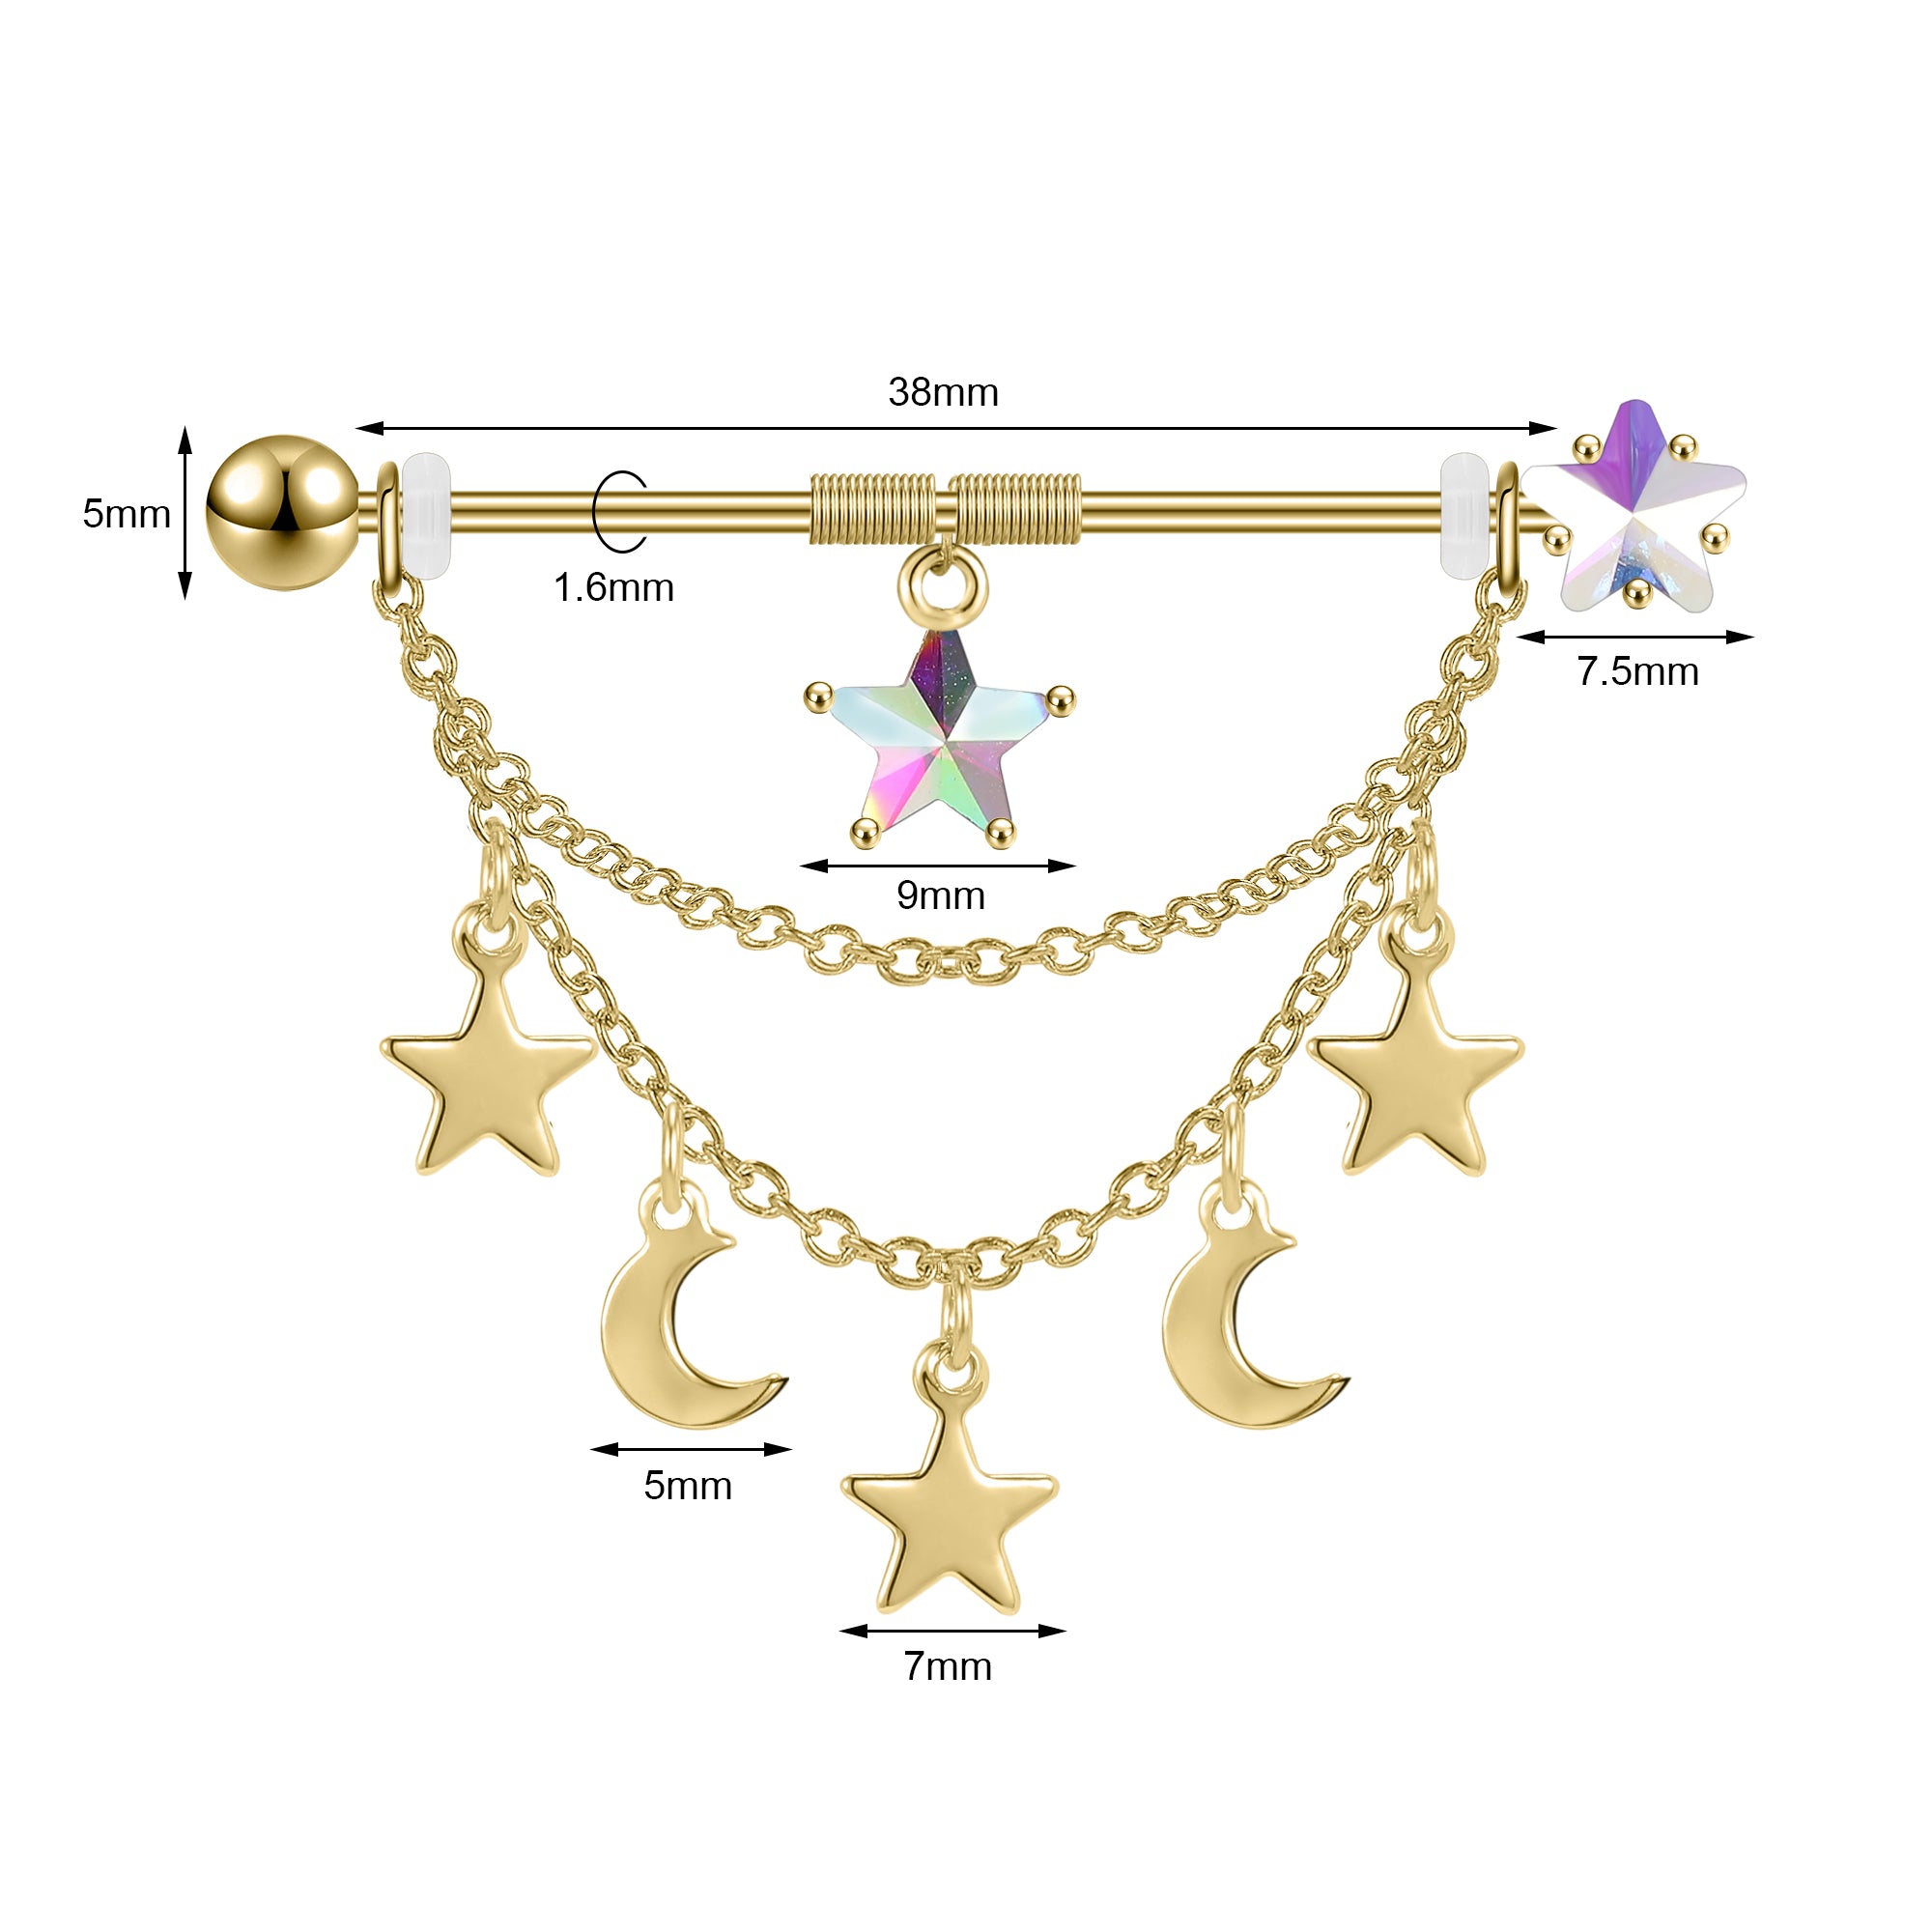 14g-gold-moon-star-industrial-barbell-earring-dangle-chain-helix-ear-piercing